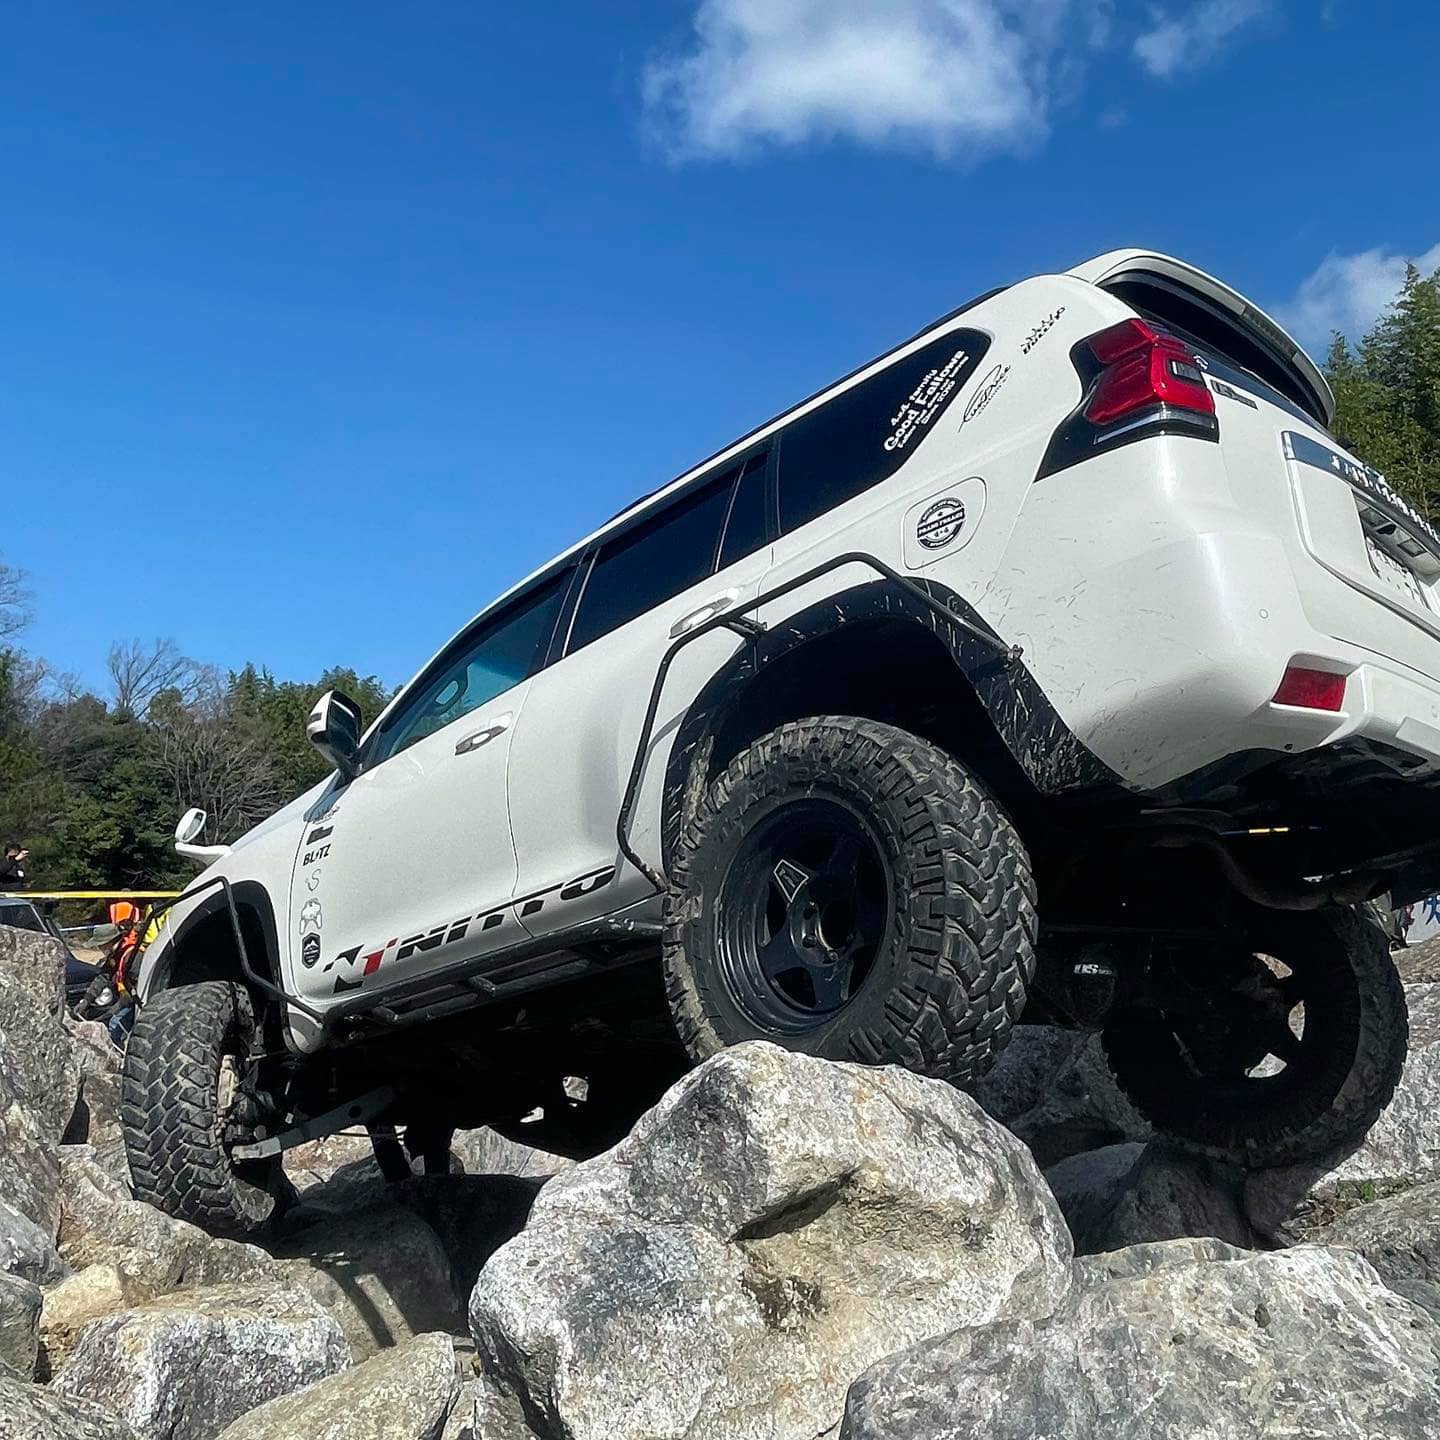 Toyota Land Cruiser Prado 150 rock crawling